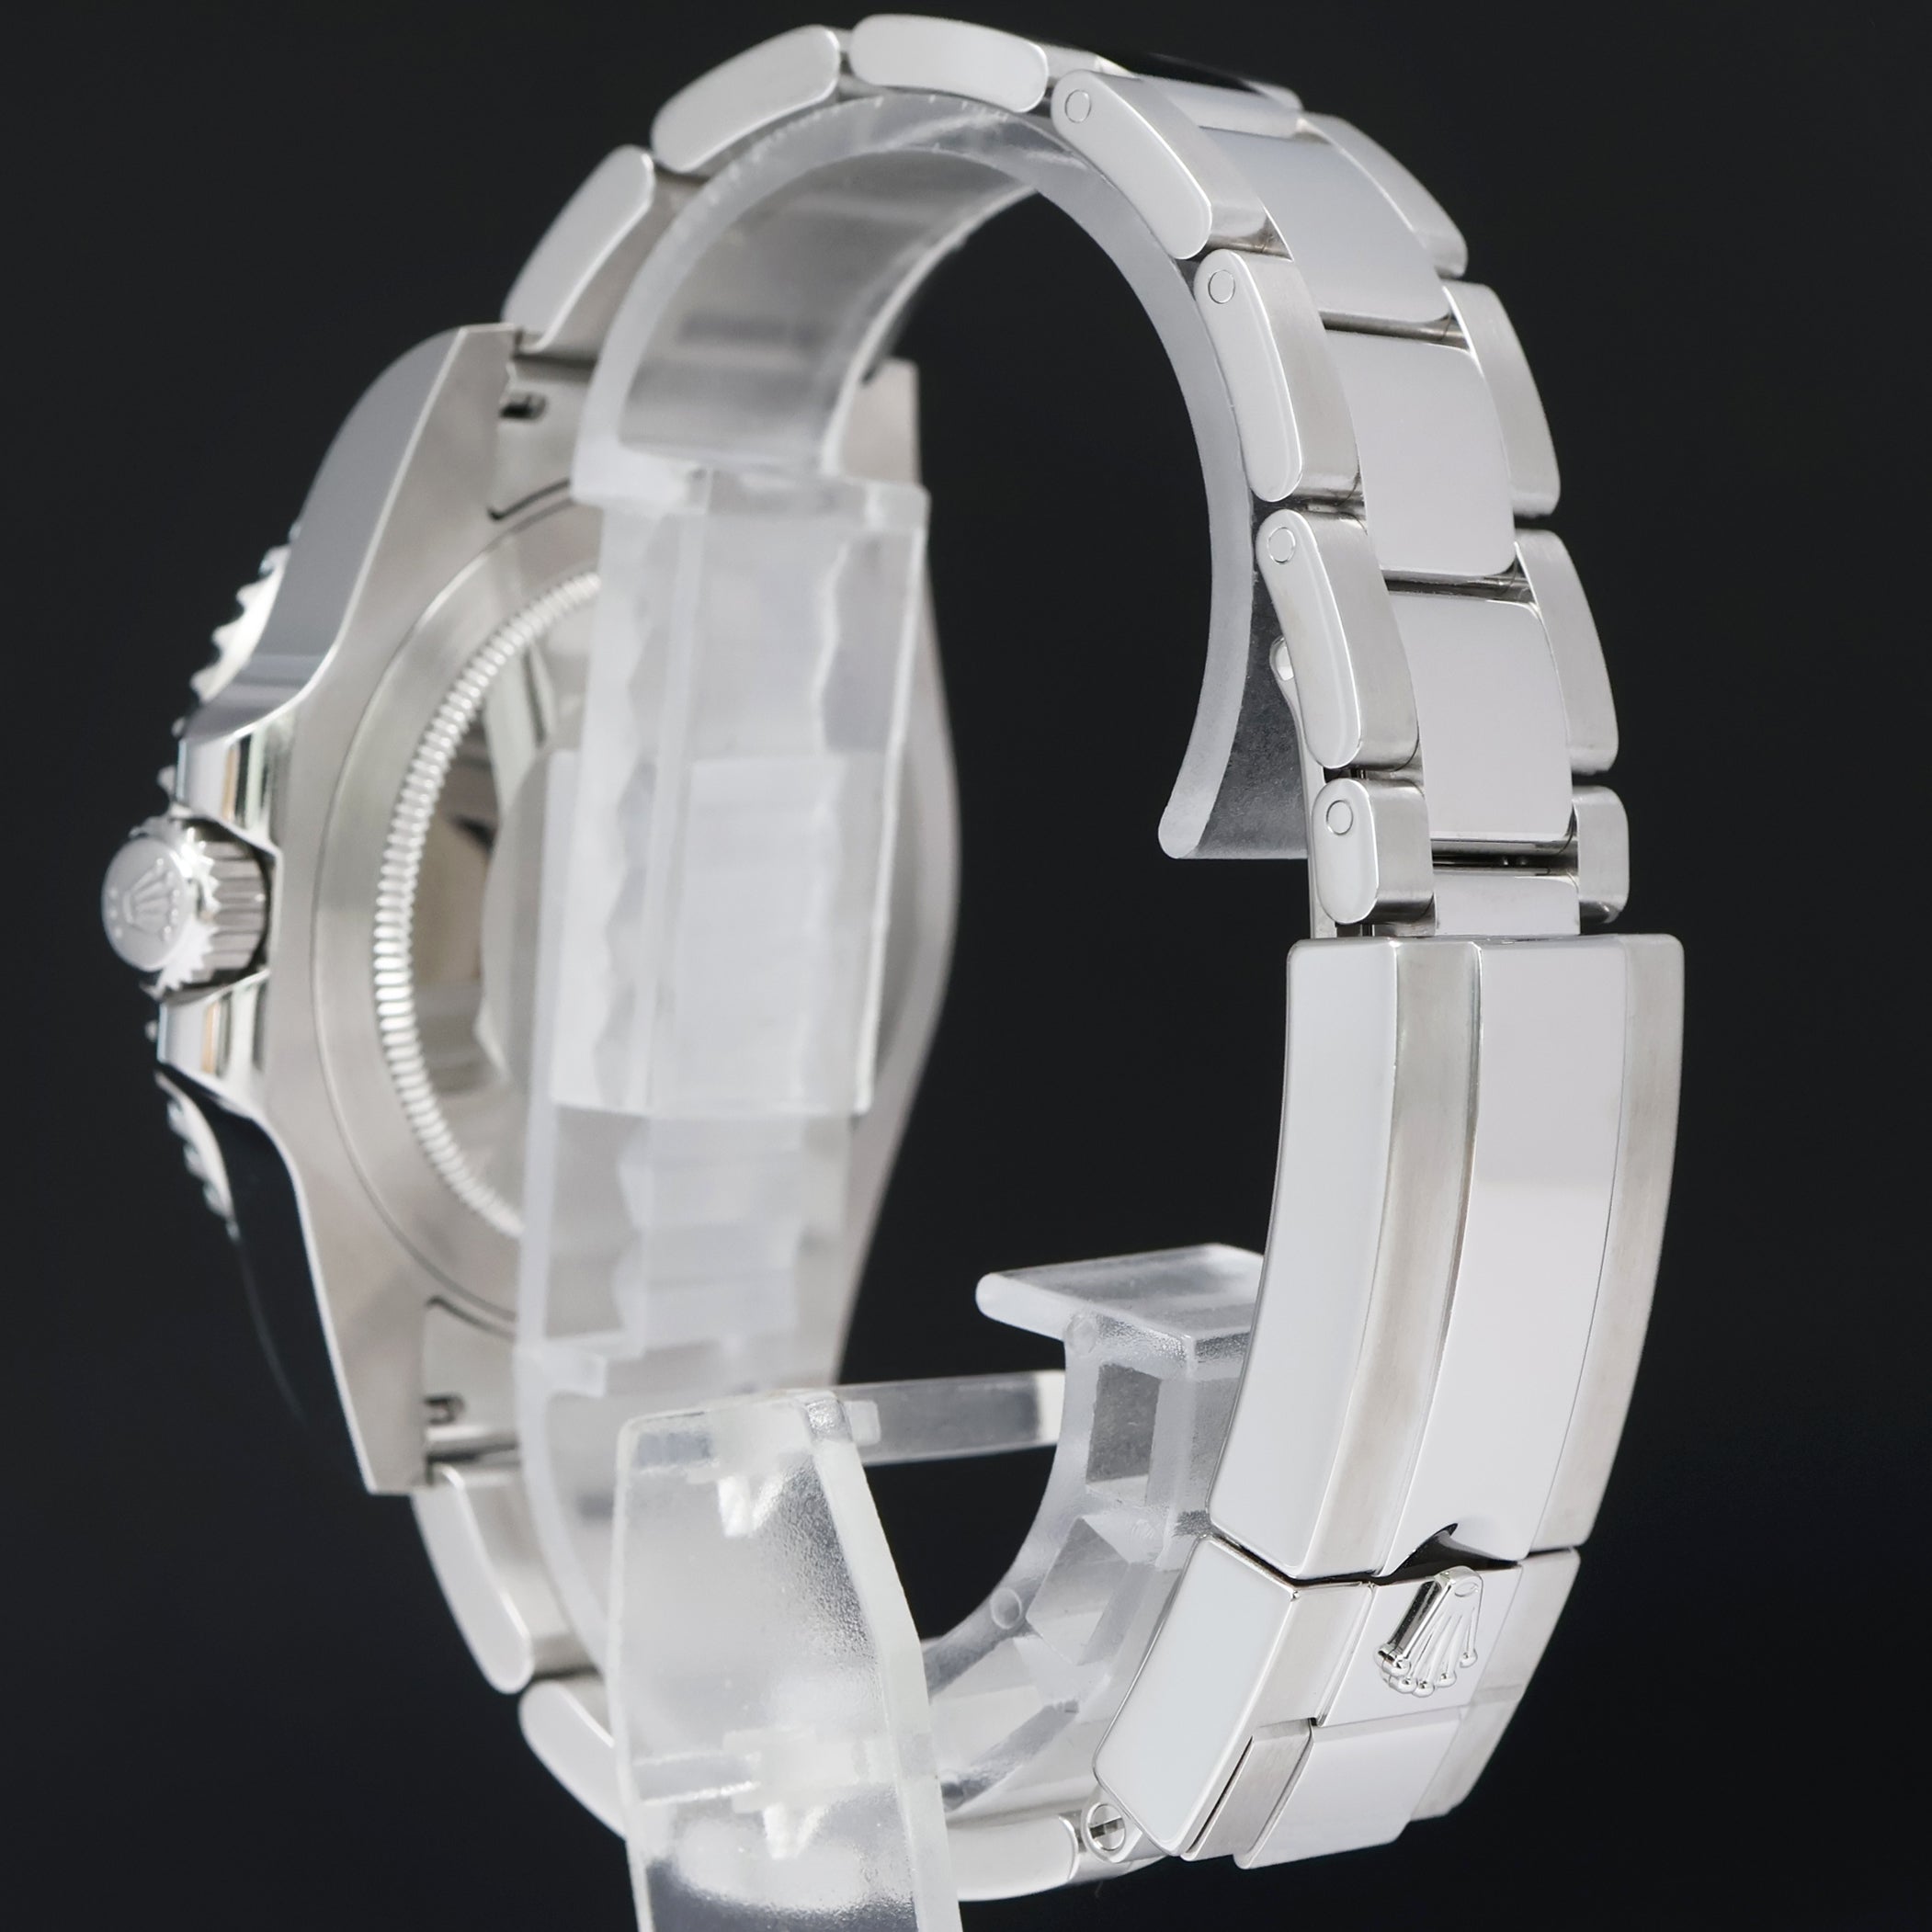 MINT 2016 Rolex GMT Master II 116710 Steel Ceramic Black Dial 40mm Watch Box